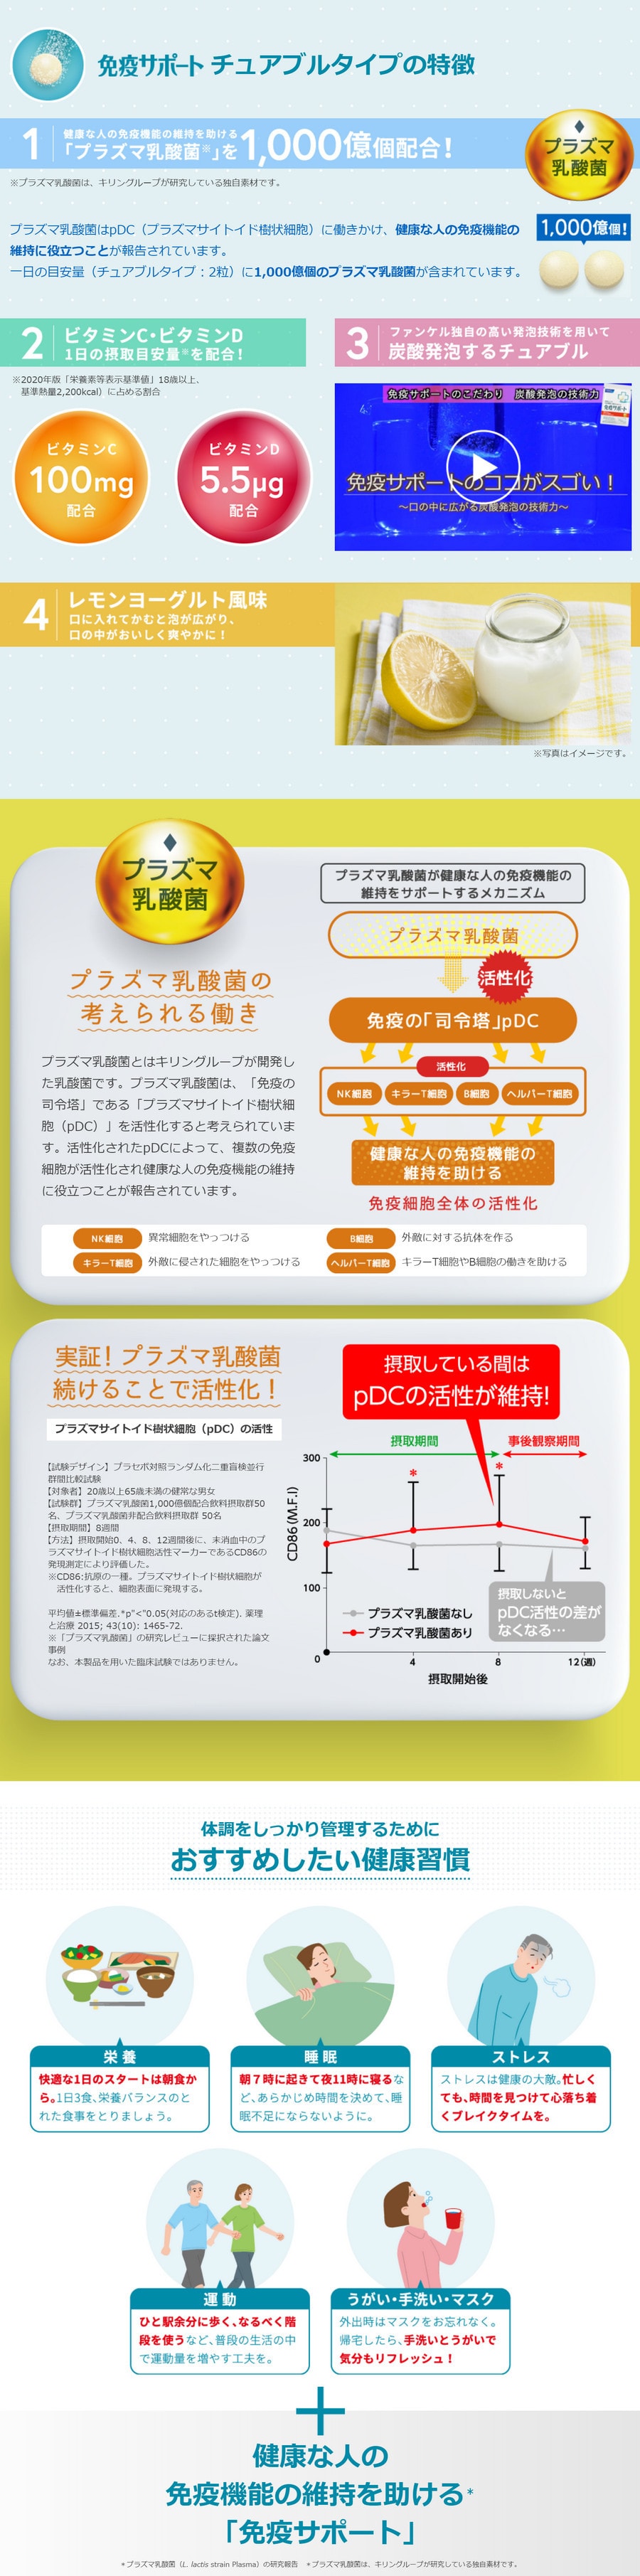 【日本直邮】新产品! FANCL 无添加 免疫支援 增强免疫力 柠檬酸奶味 30日 60粒